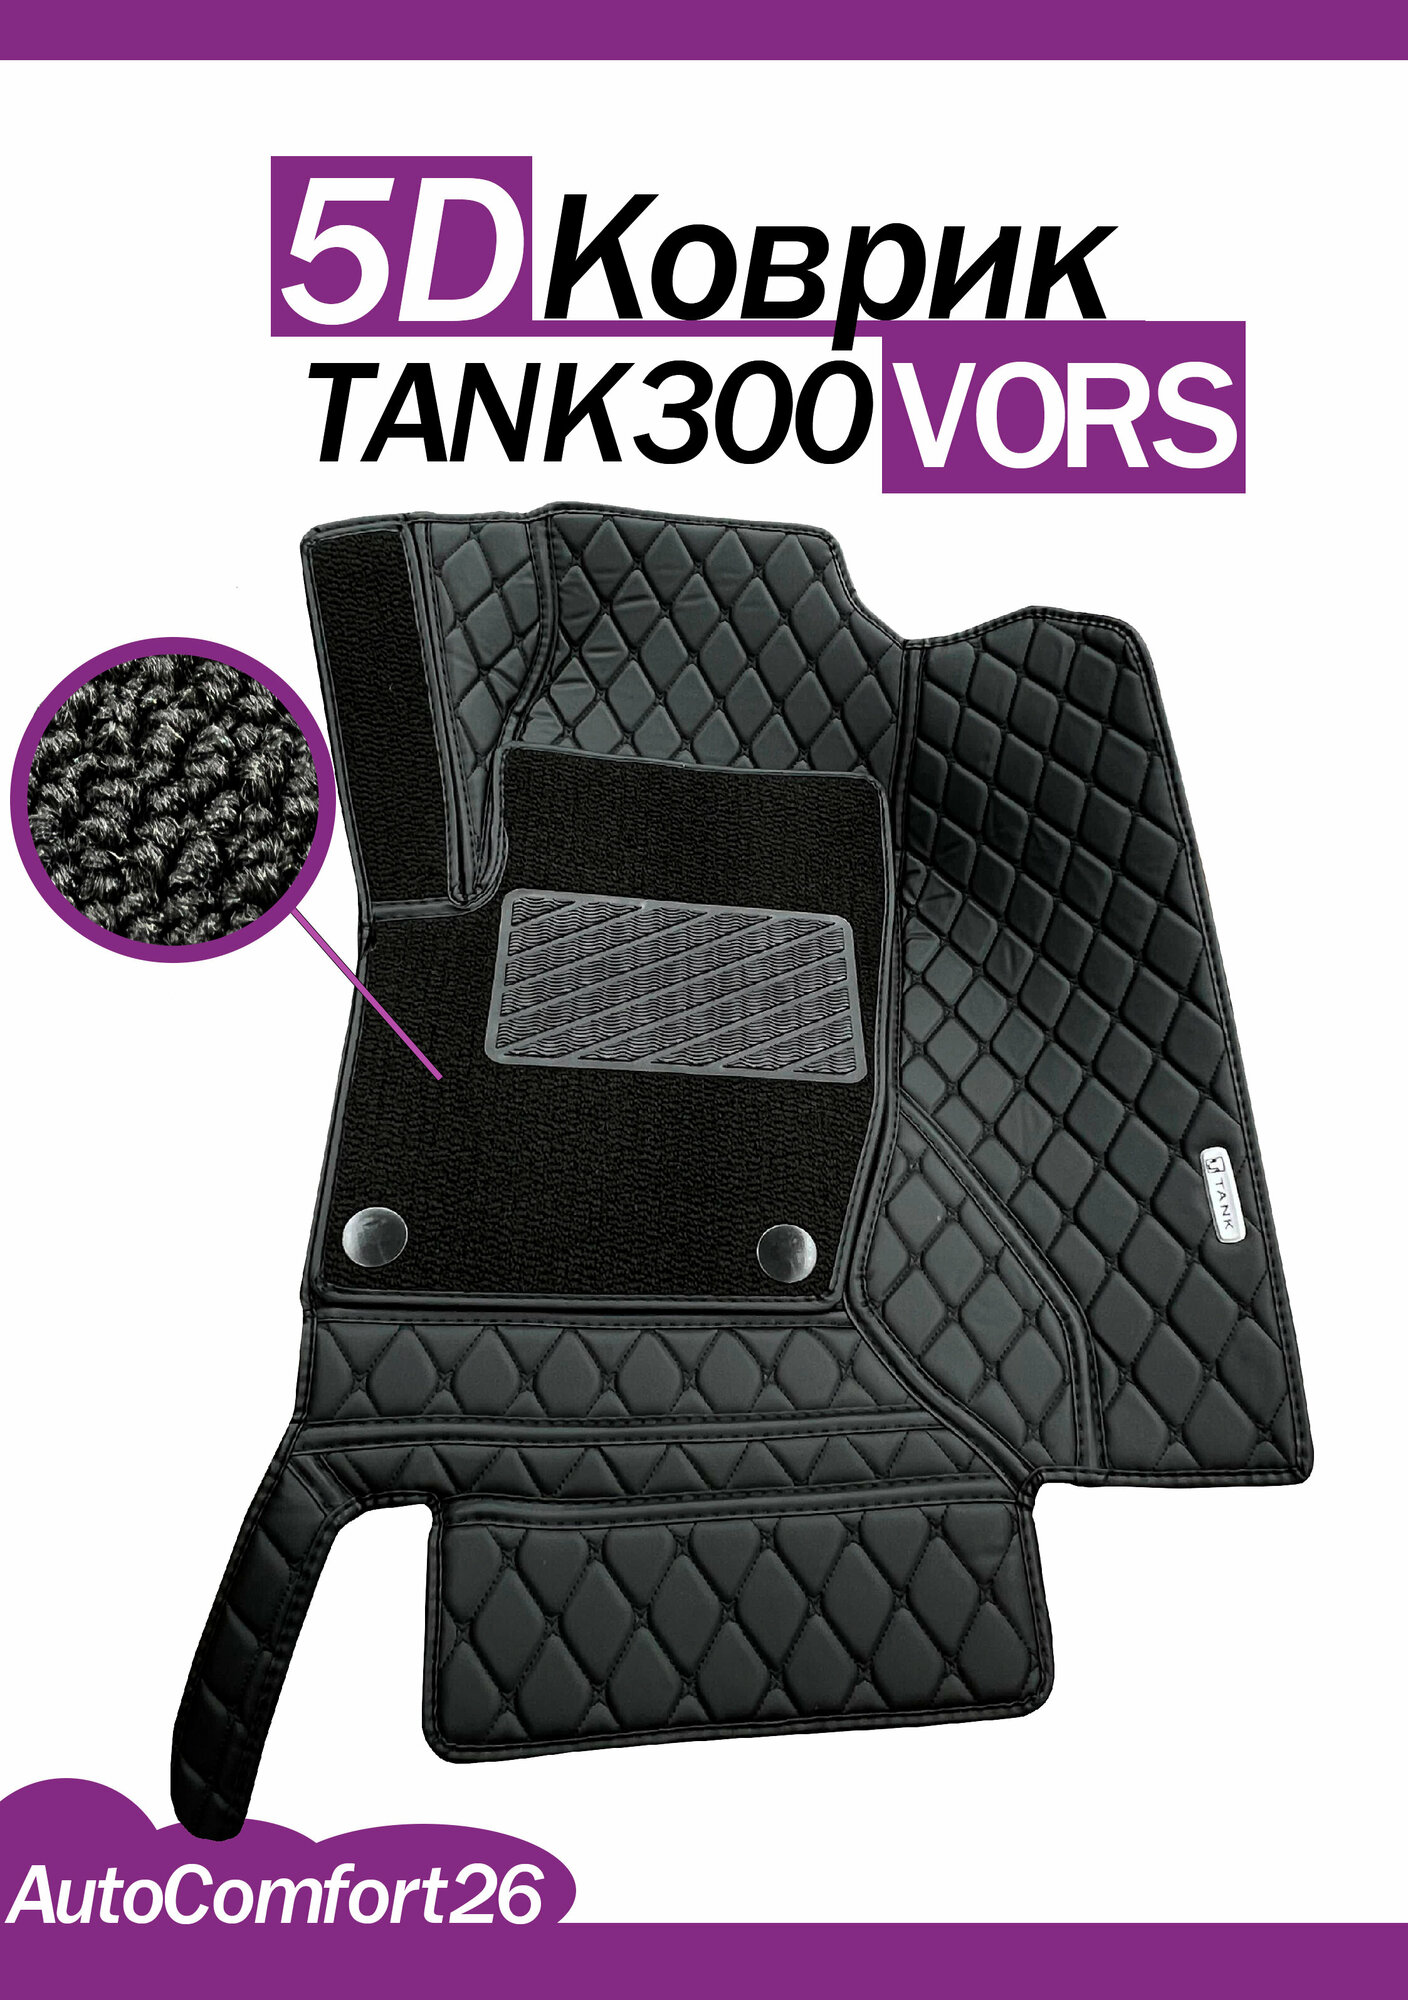 Кожаные 5D-коврики для TANK300 VORS